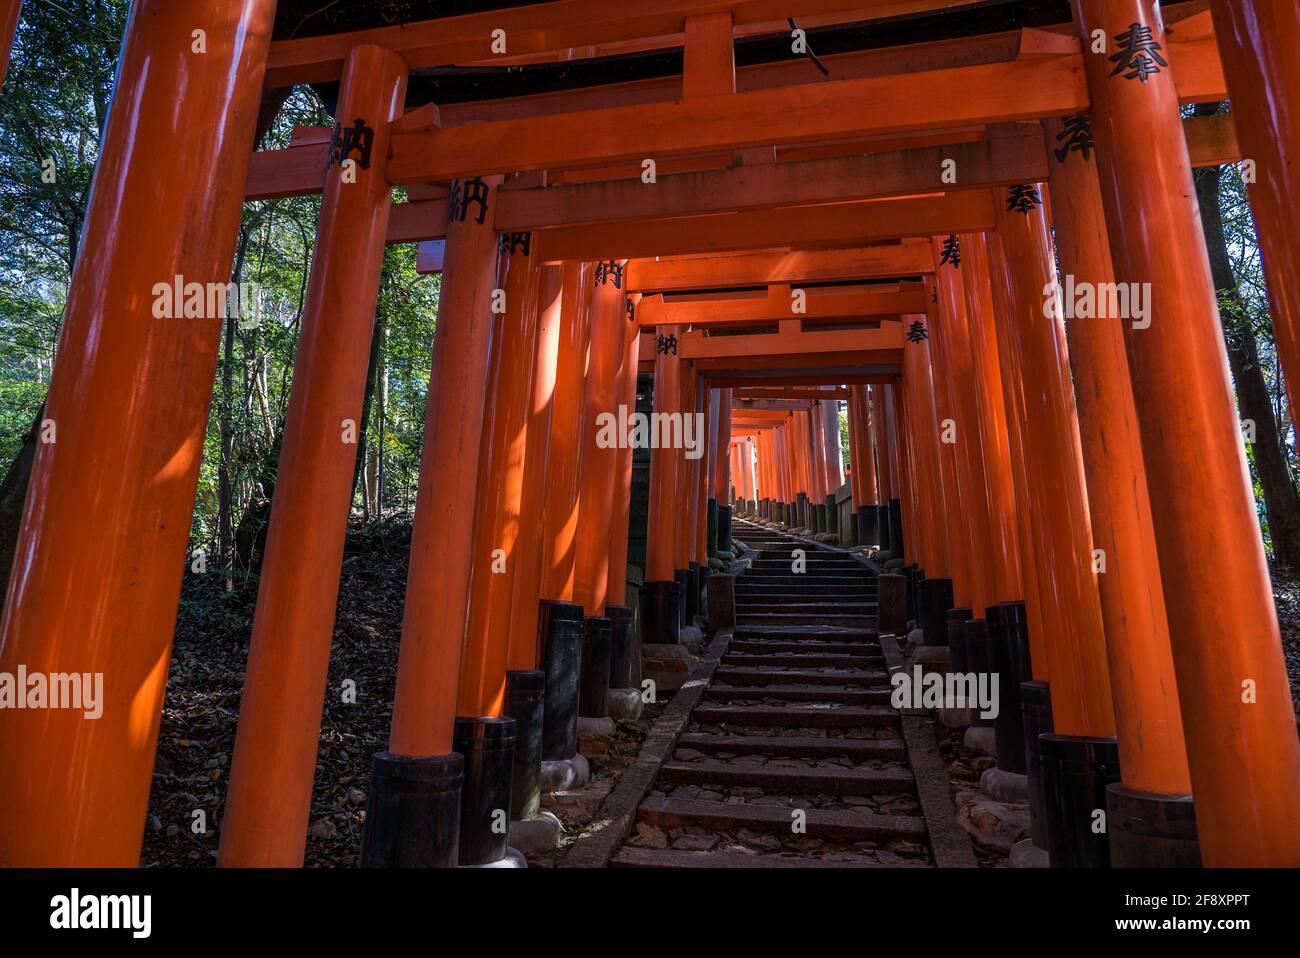 Fushimi Inari Taisha, camminando attraverso migliaia di porte torii rosse nel santuario religioso giapponese Shinto, Fushimi-ku, Kyoto, Giappone. Foto Stock